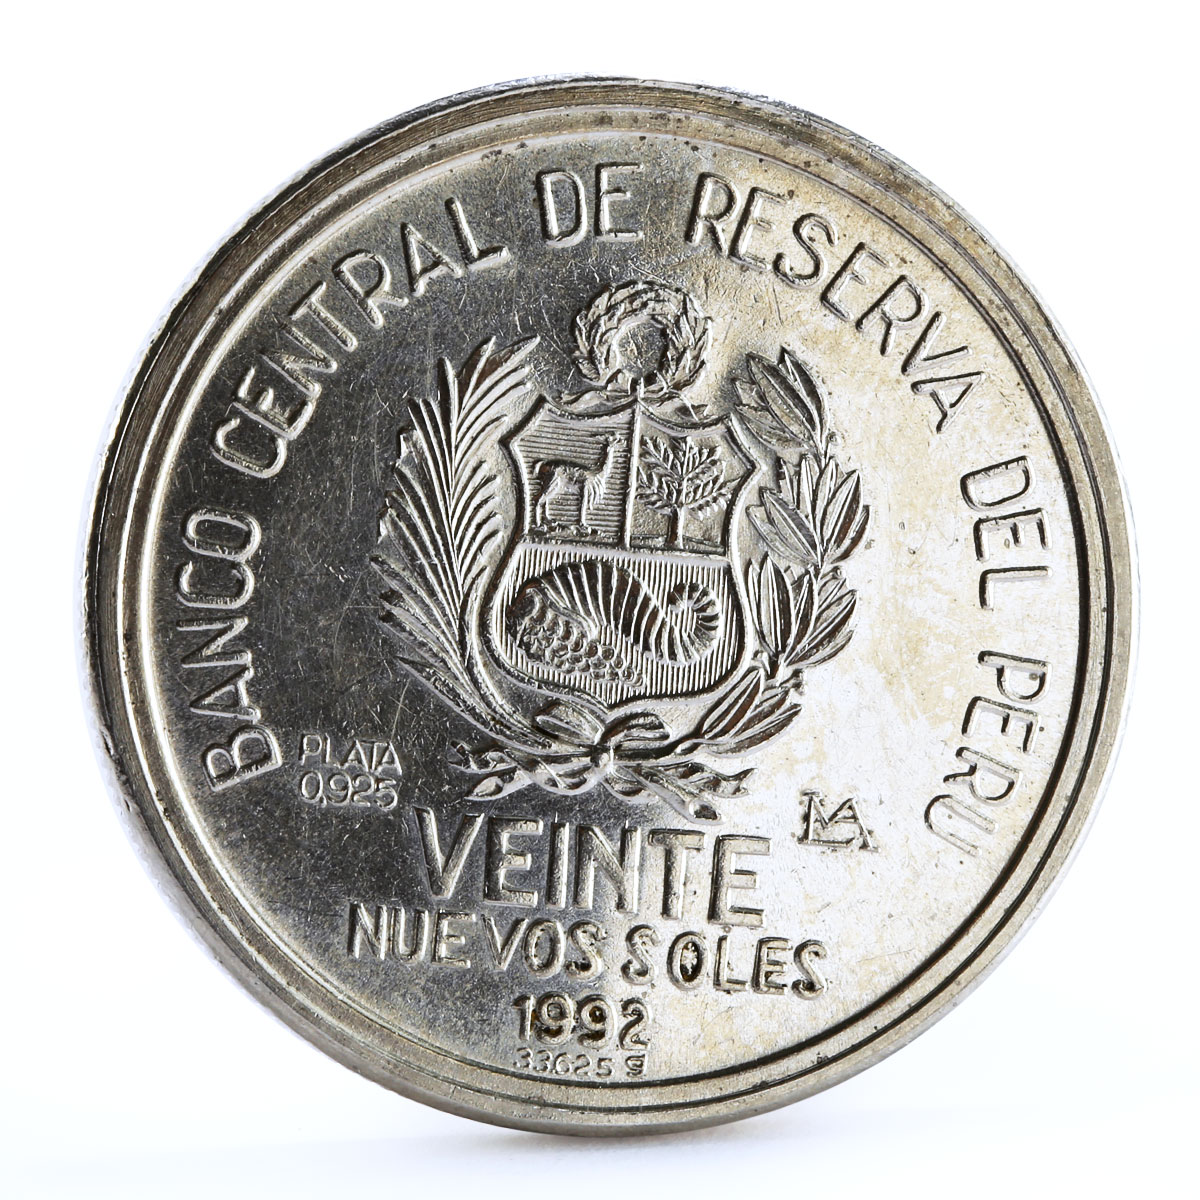 Peru 20 soles Protocol of Rio de Janeiro Bird Fauna silver coin 1992